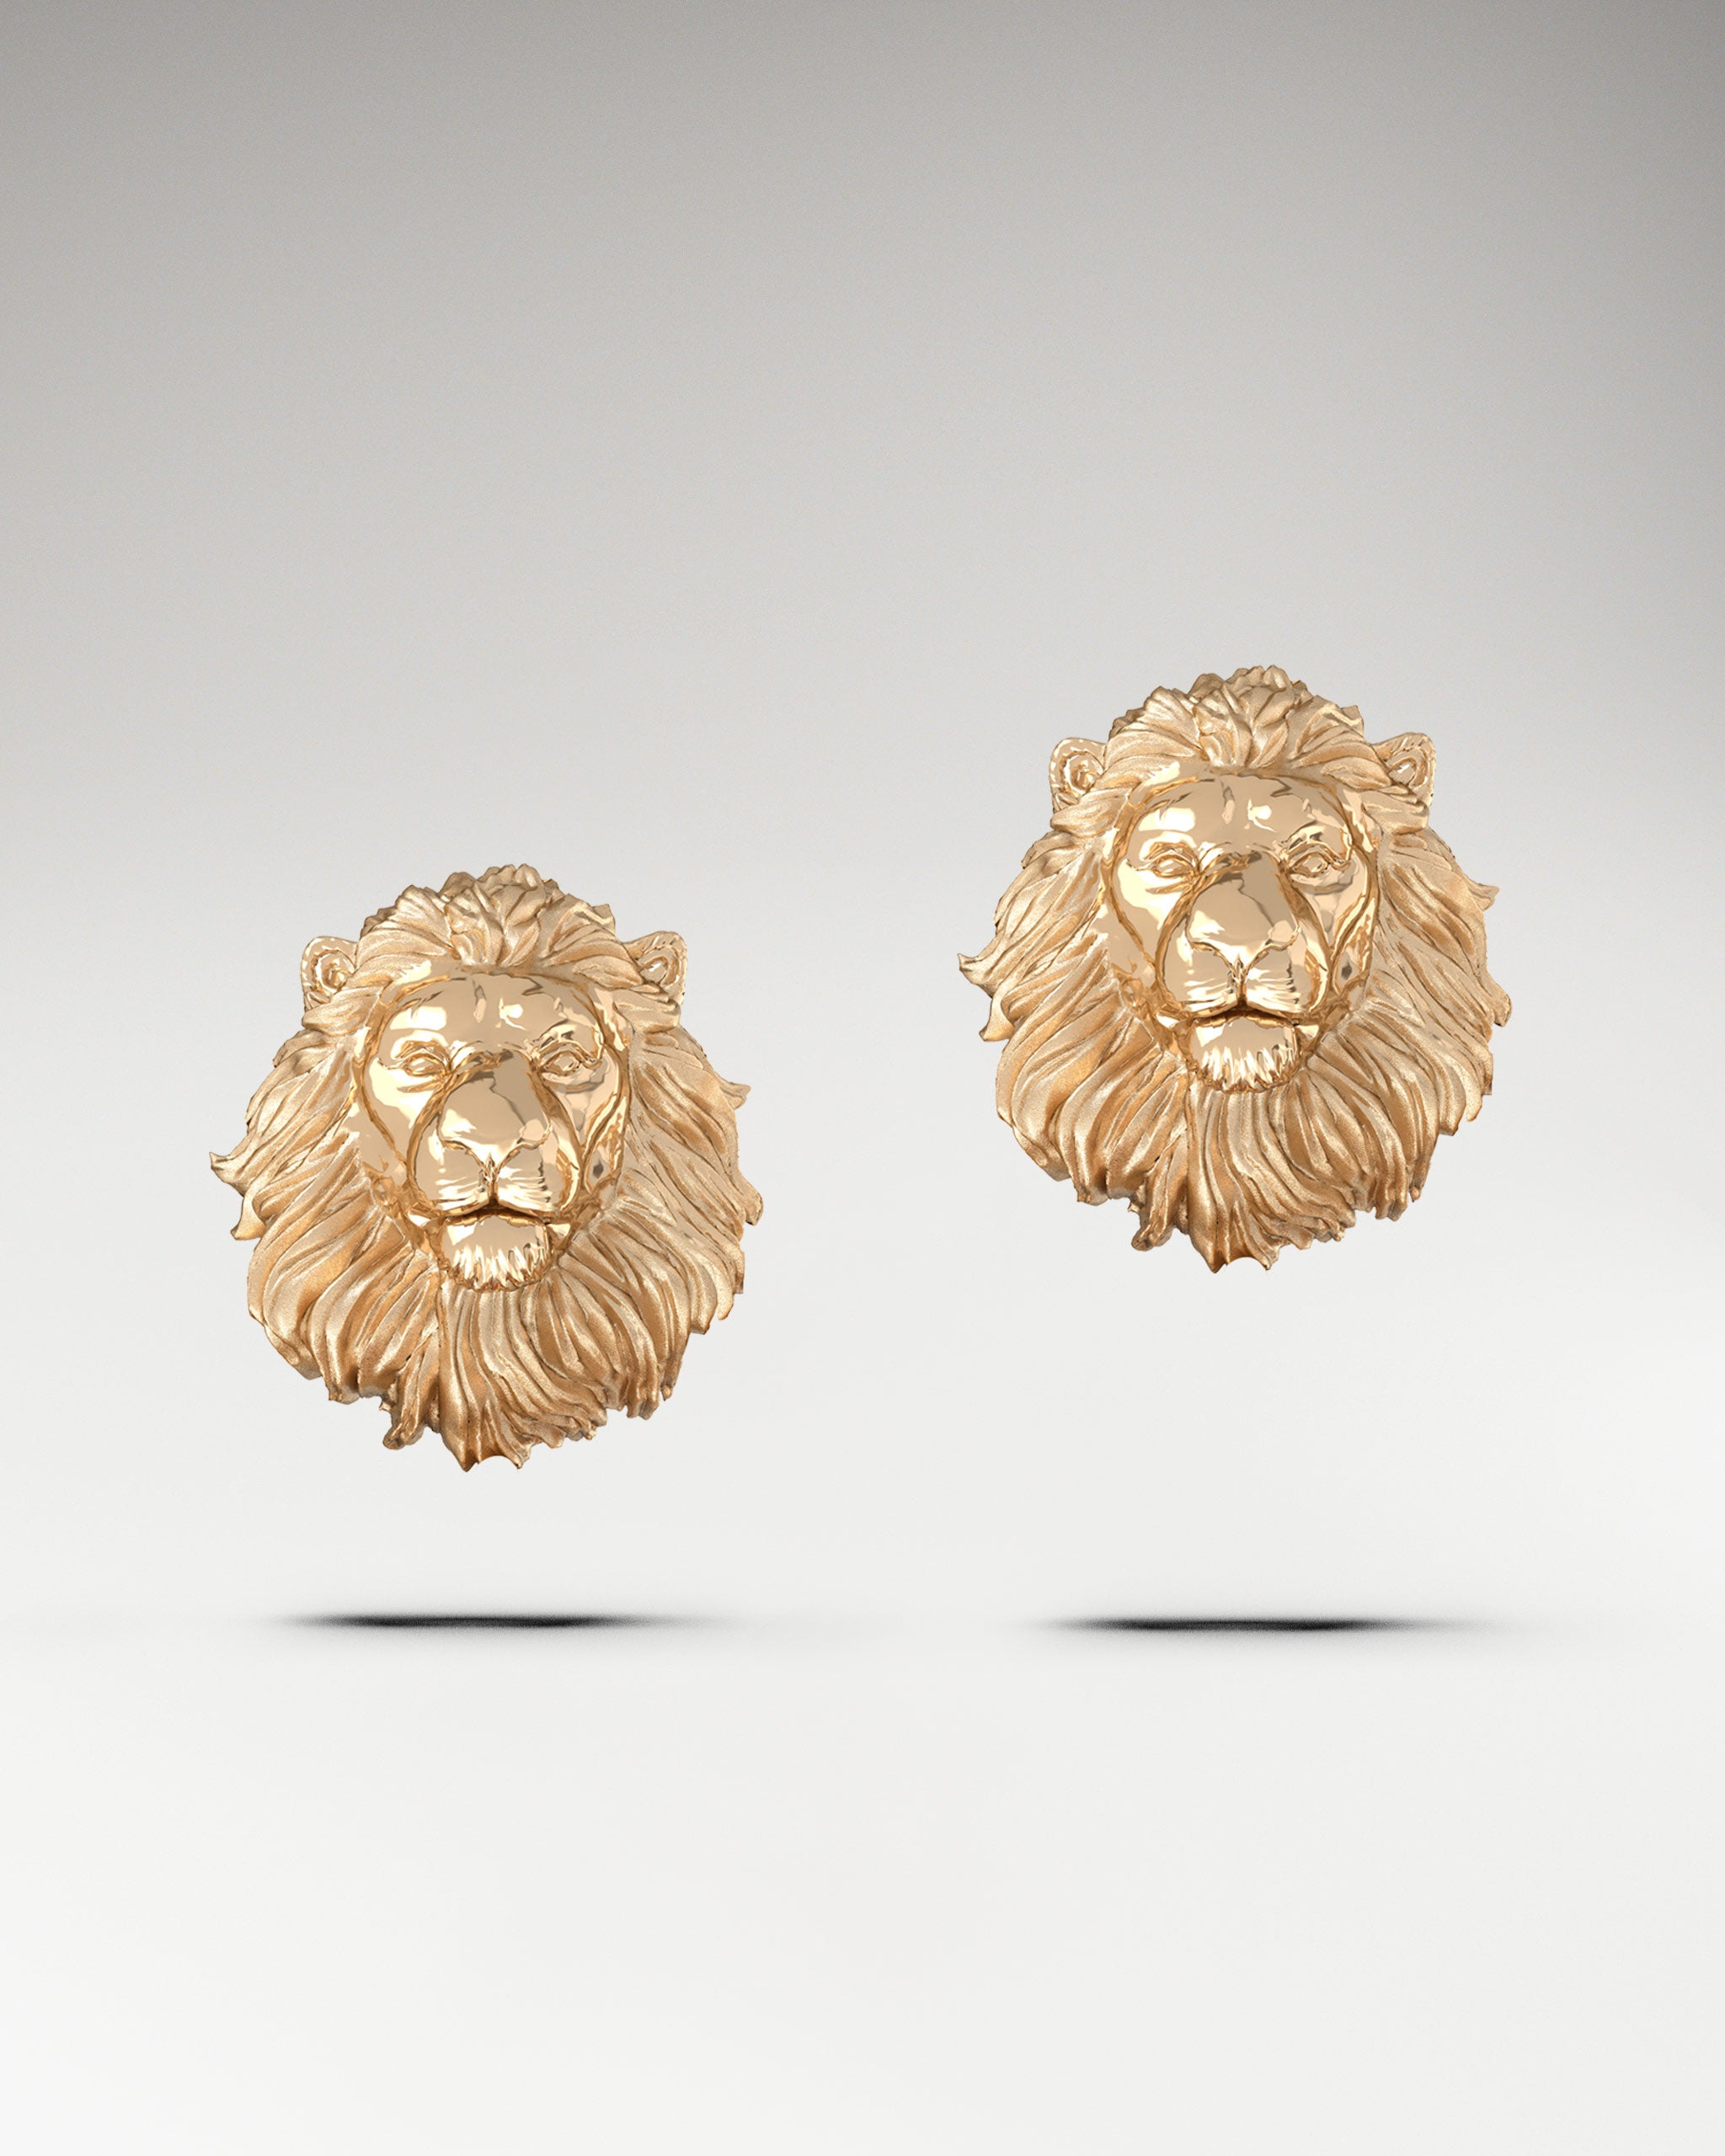 Guardian Lion Stud Earrings in 10k Gold